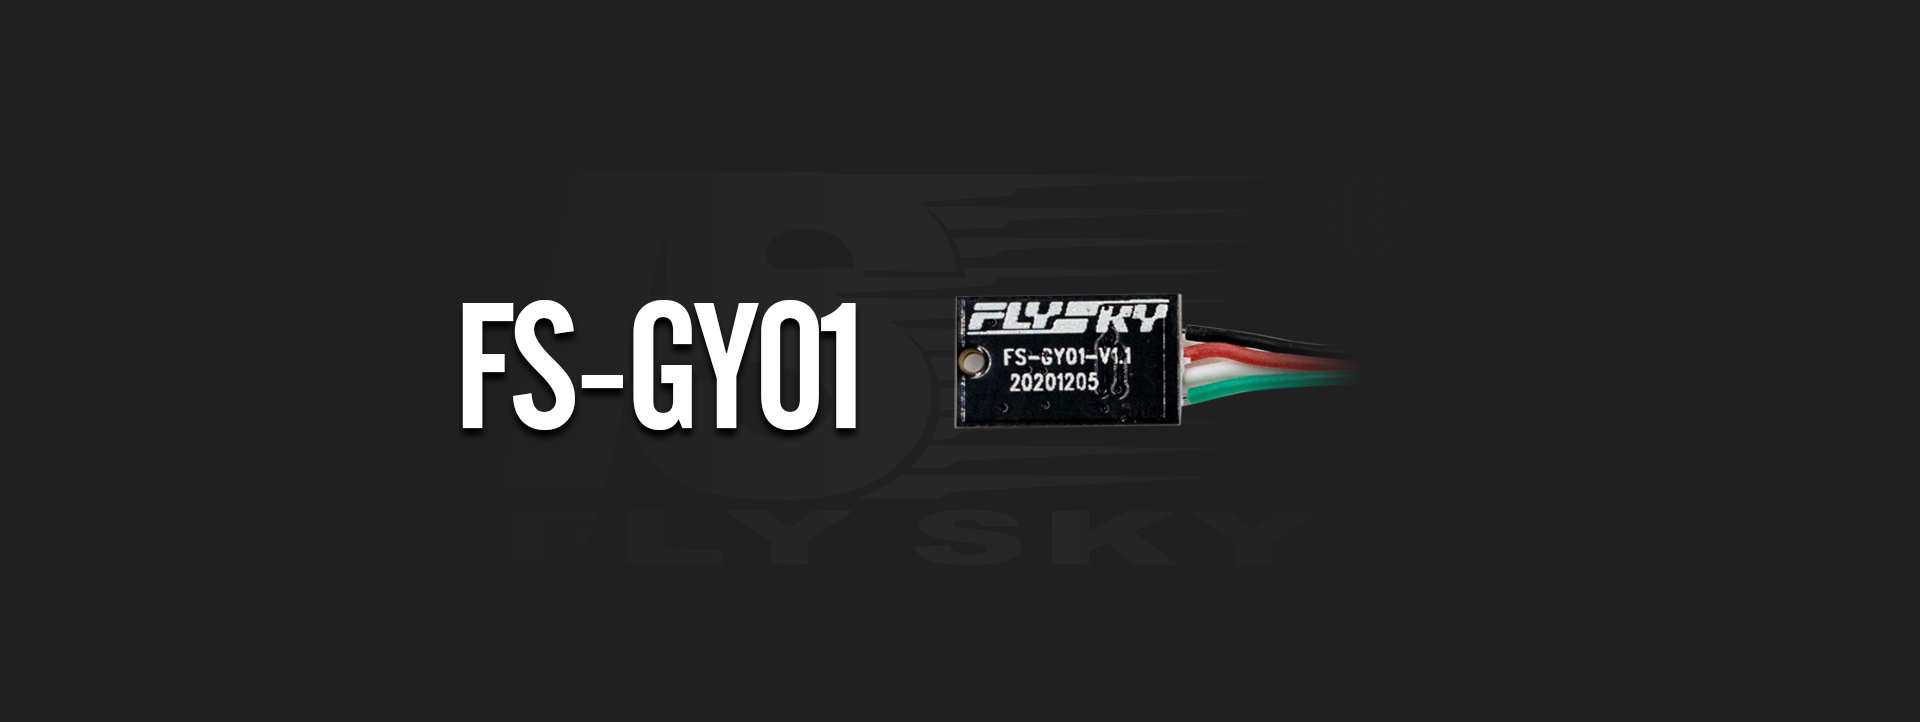 FS-GY01